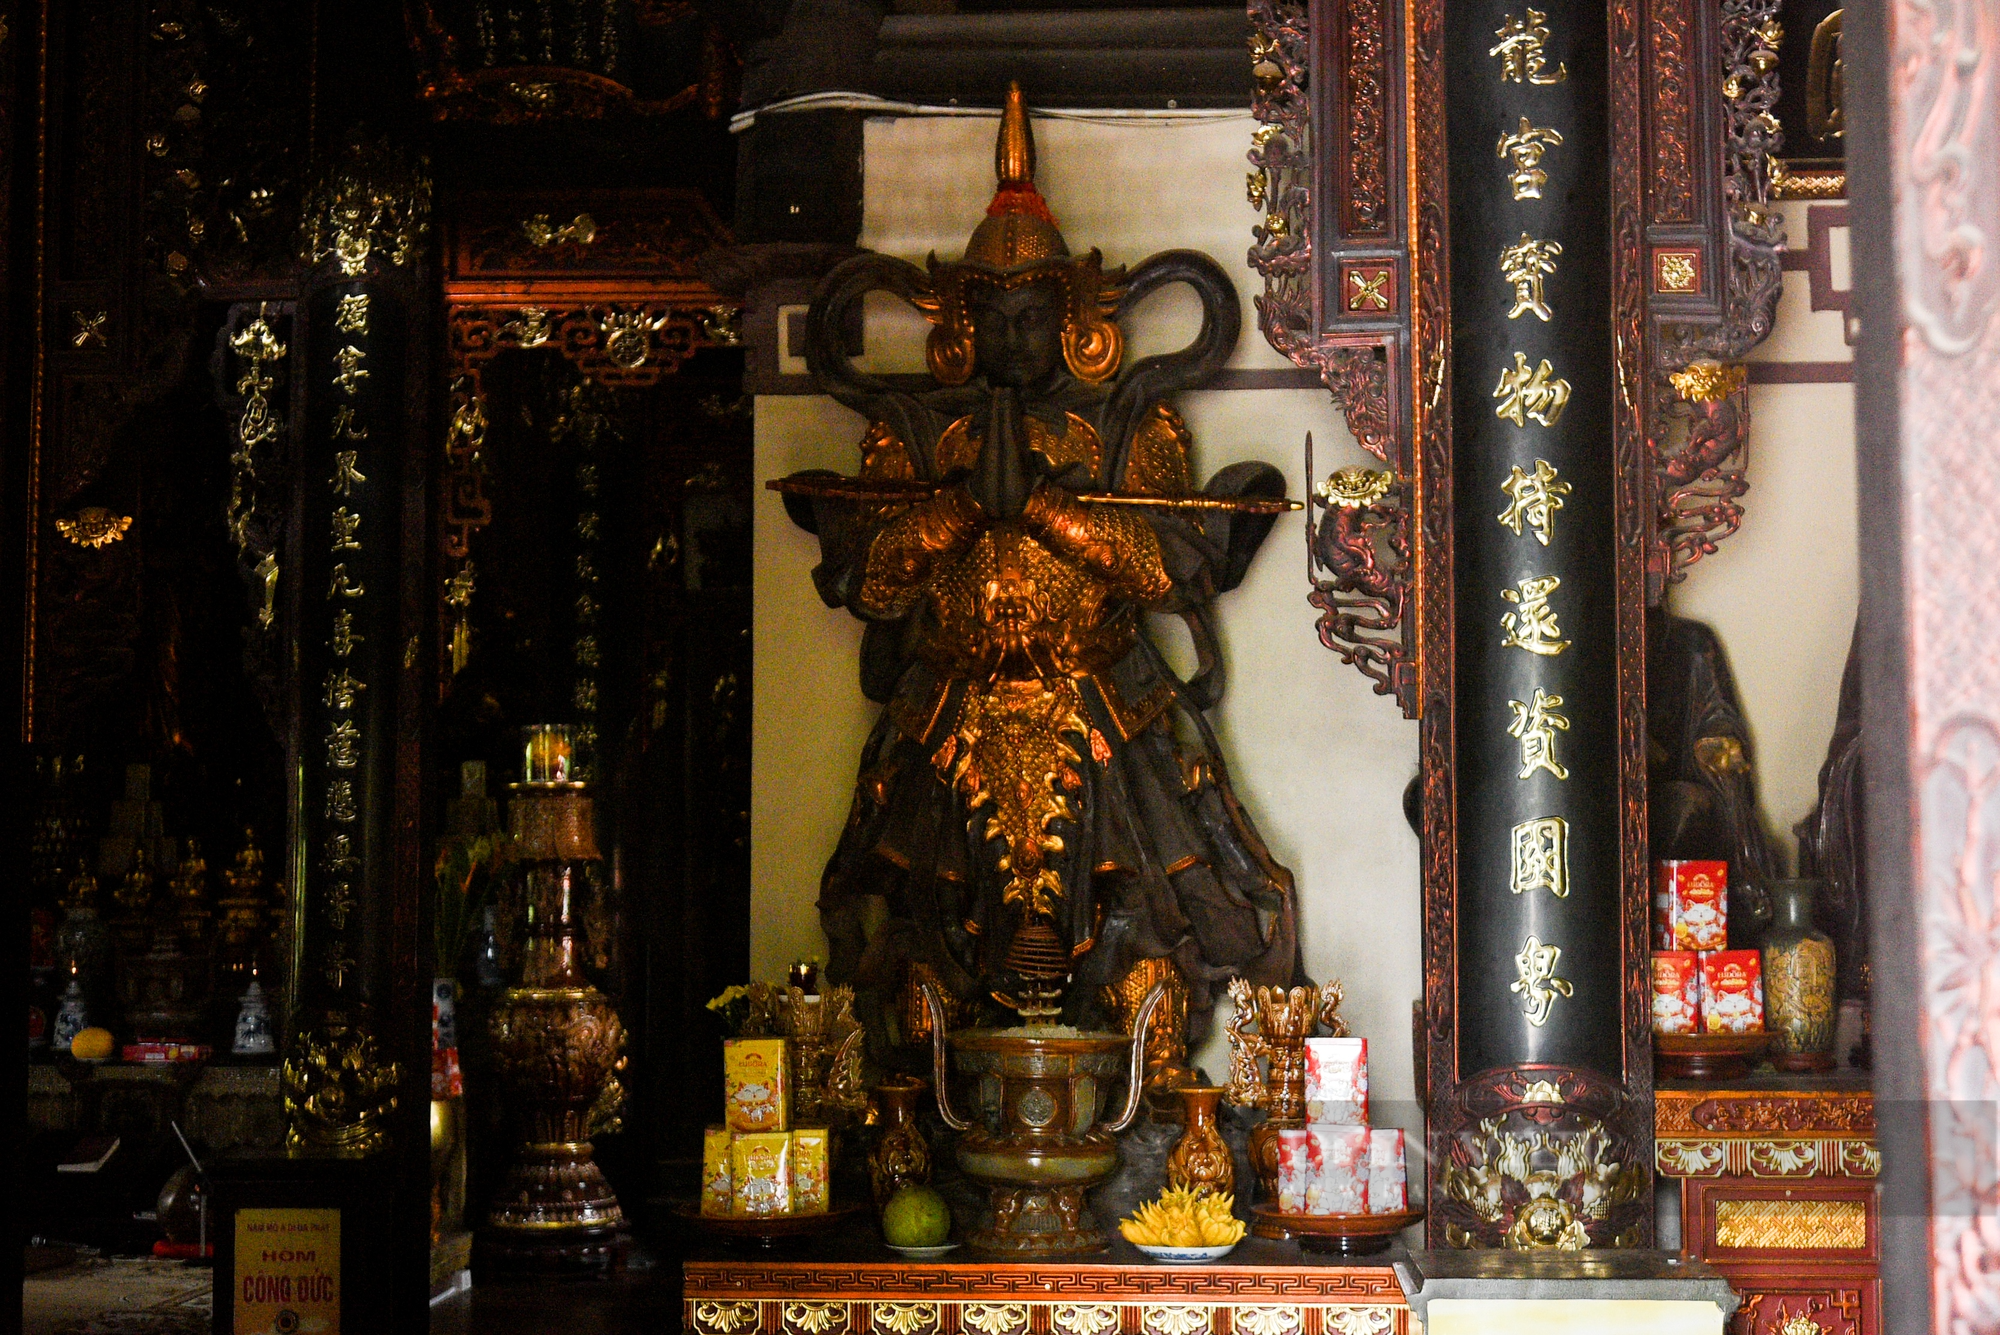 Khám phá ngôi chùa gốm sứ ở Bát Tràng